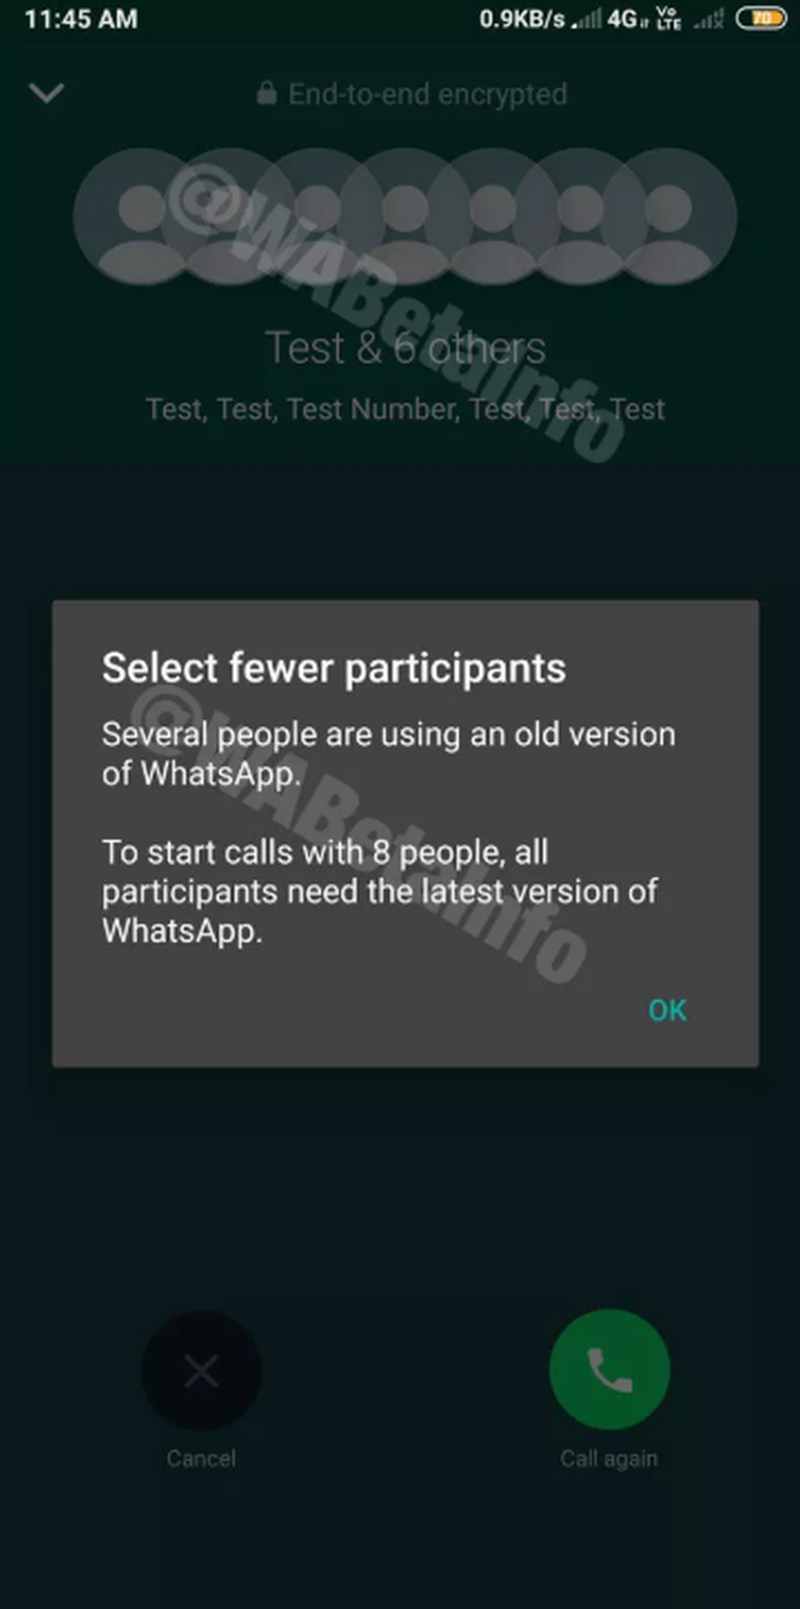 WhatsApp grup görüntülü görüşme konusunda yeni bir adım daha attı. Artık küçük grup görüşmeleri için Zoom'a ihtiyacınız olmayabilir.